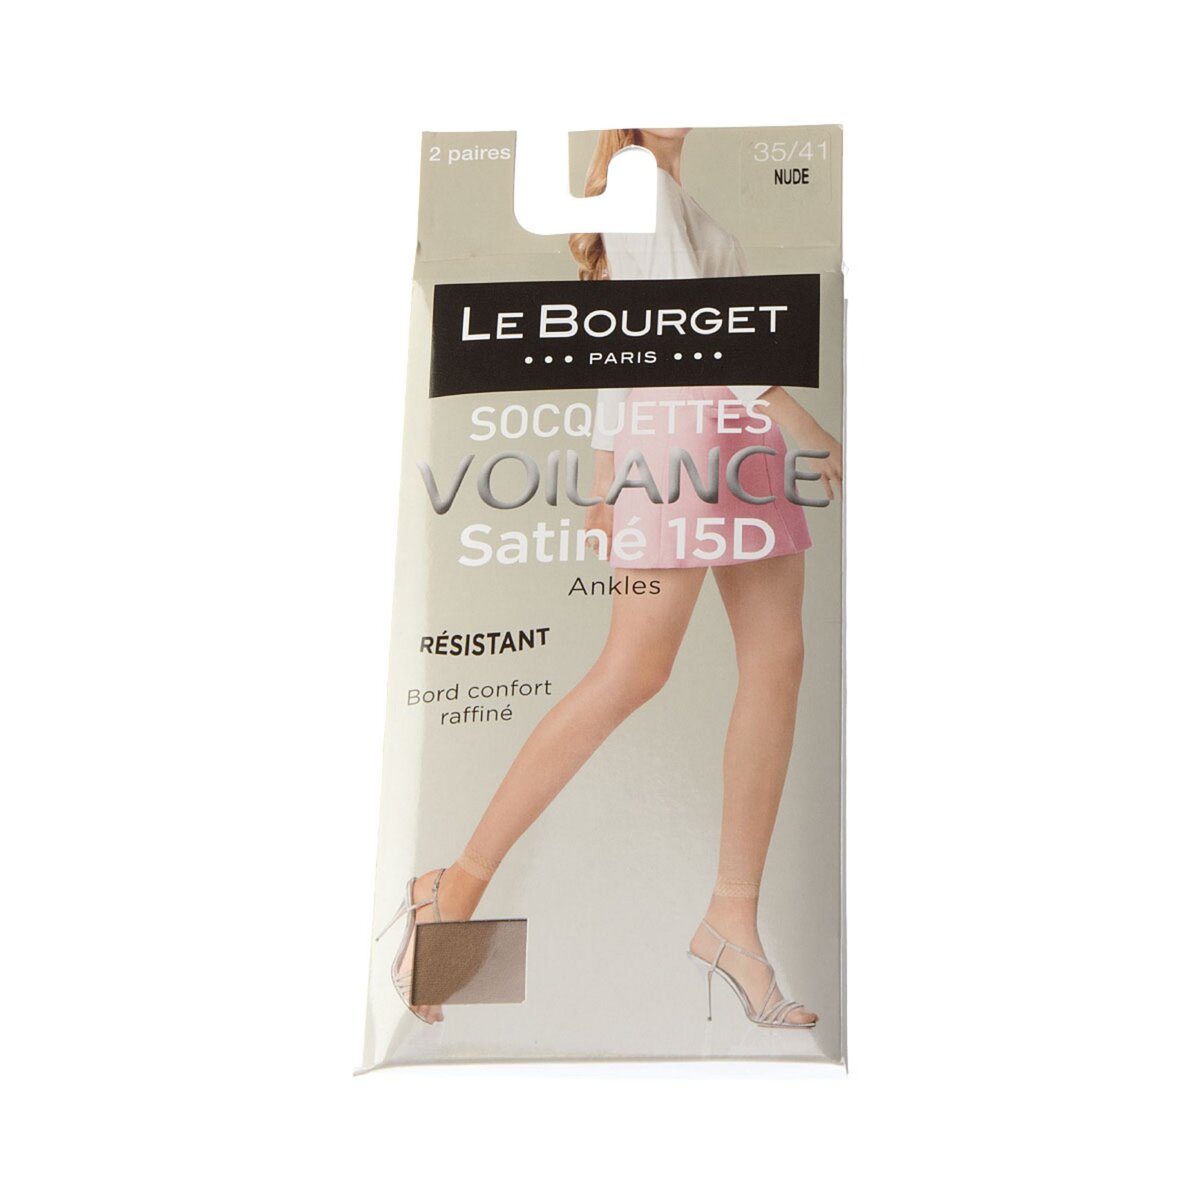 Le Bourget Bas socquettes - Lot de 2 - Infilable - Invisible - Satiné - Voilance